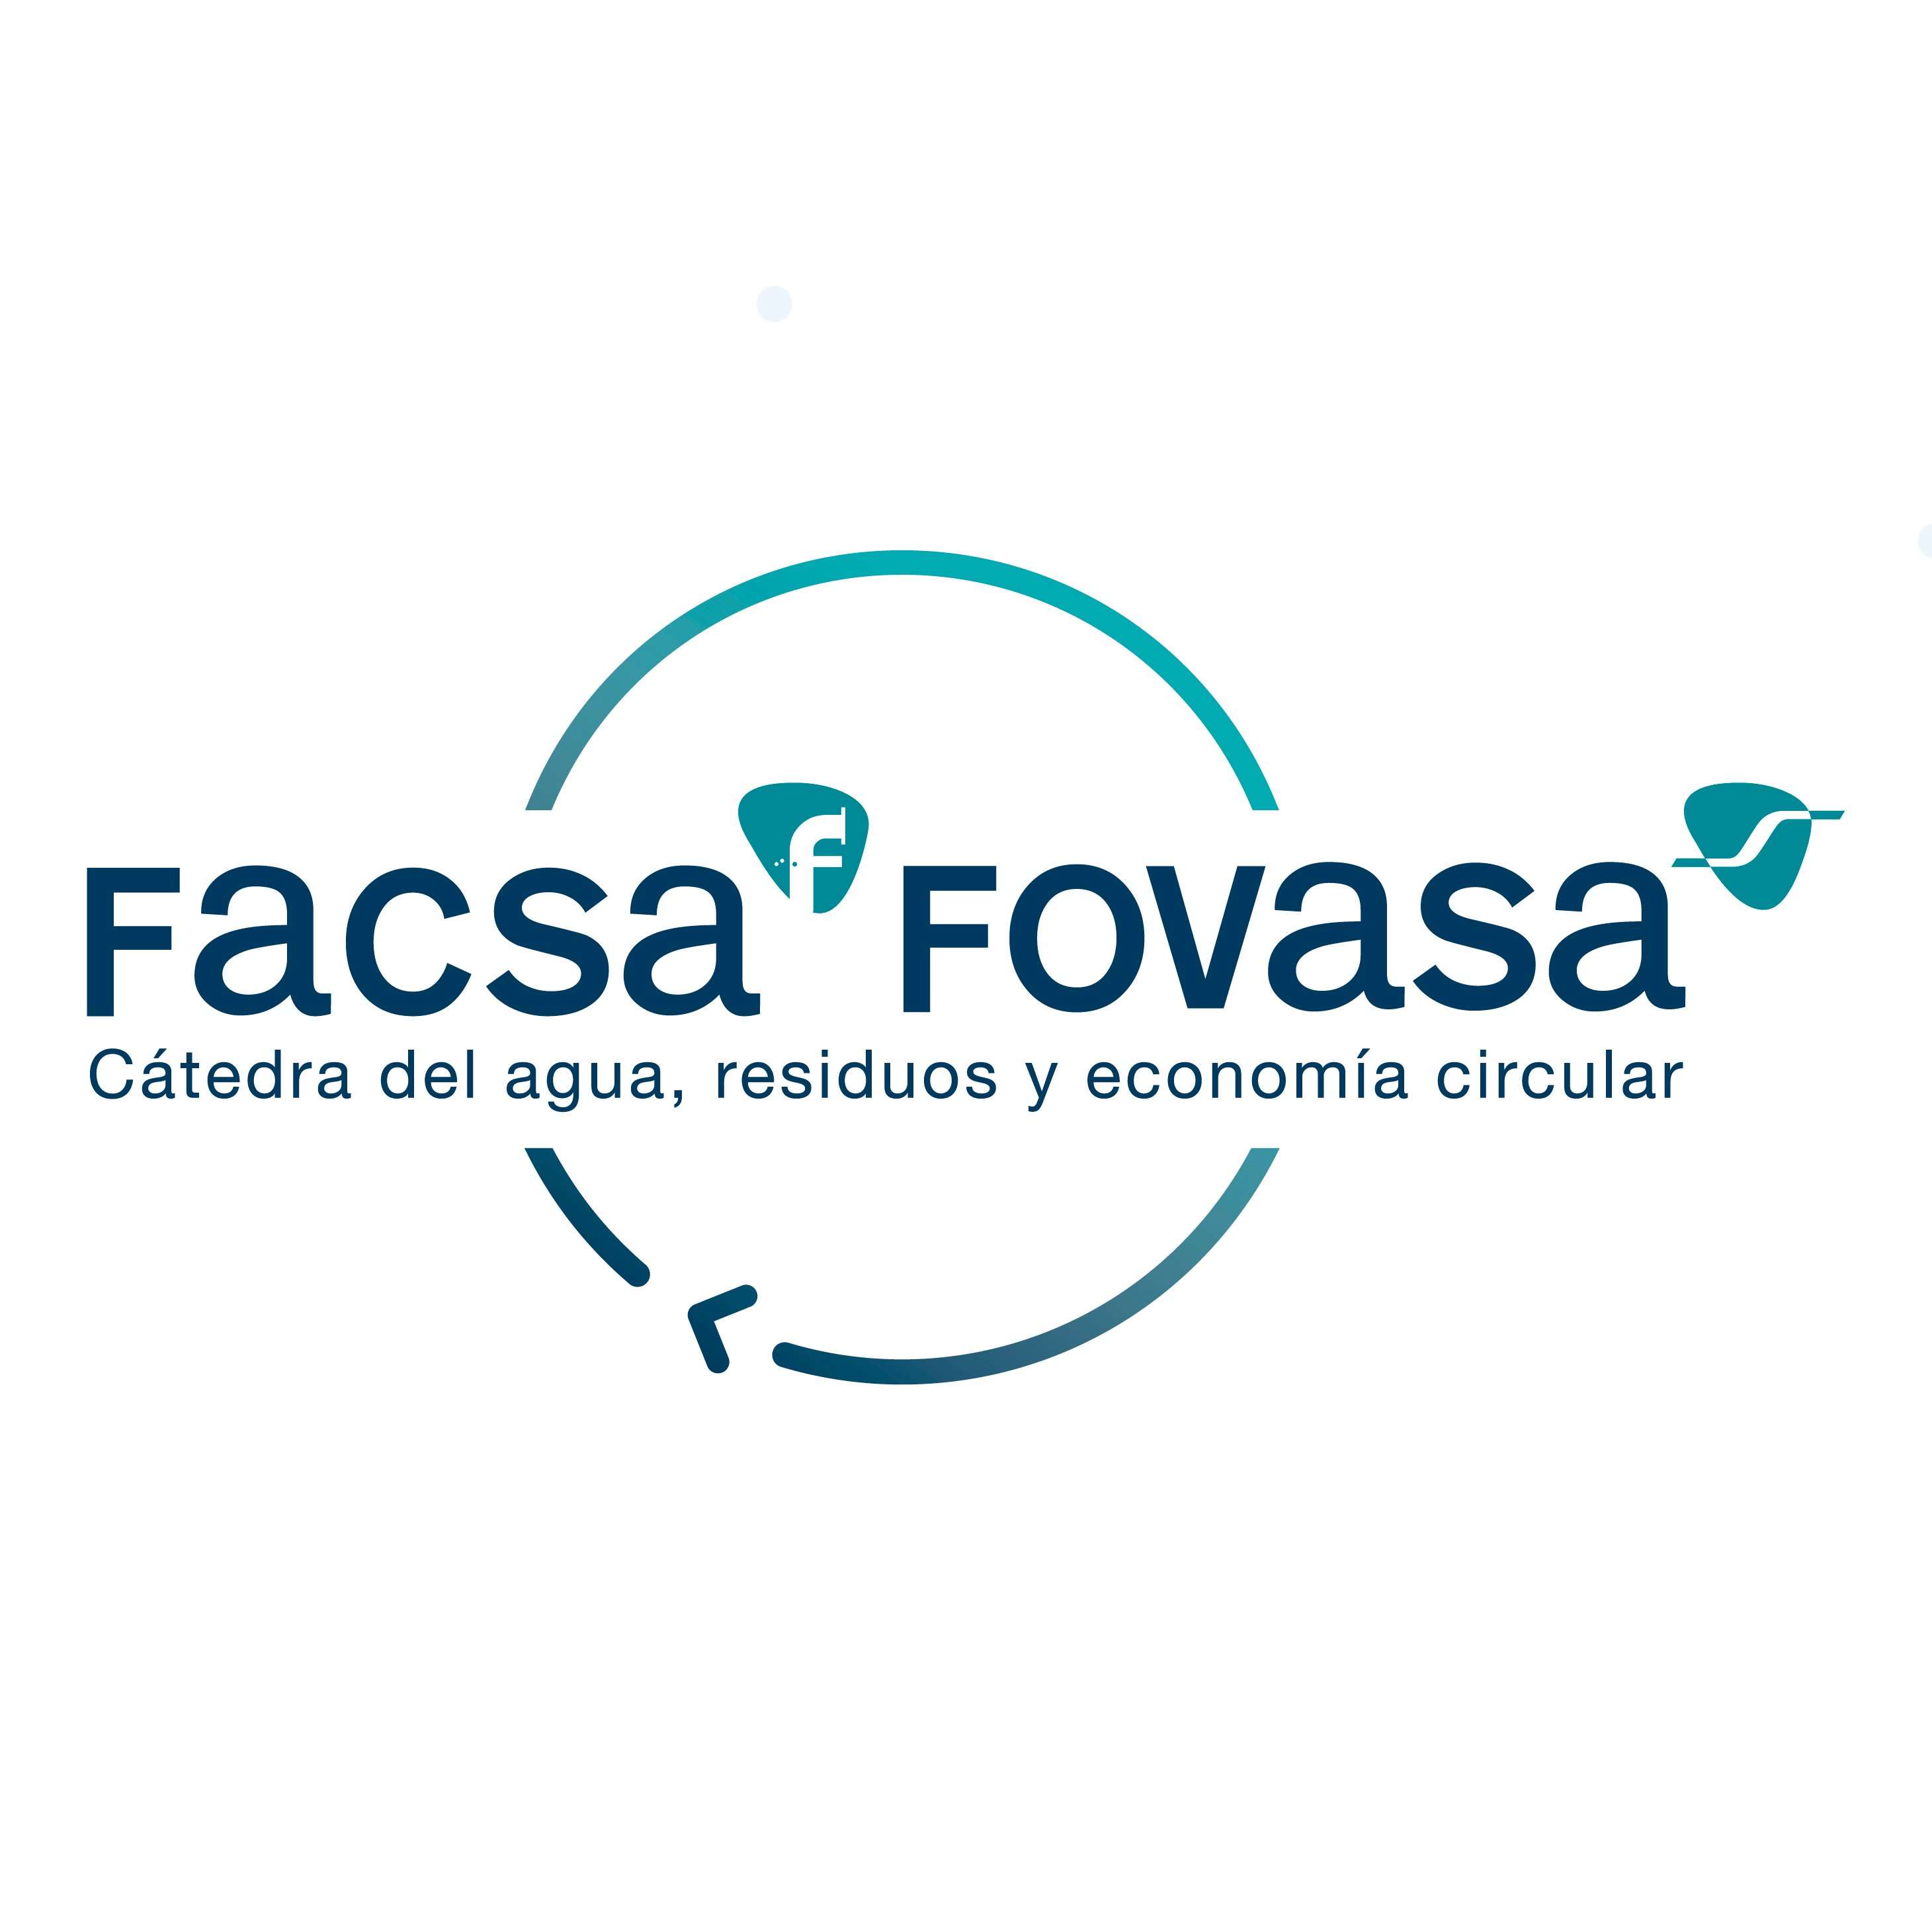 Cátedra FACSA-FOVASA de Agua, Residuos y Economía Circular de la Universitat Politècnica de València